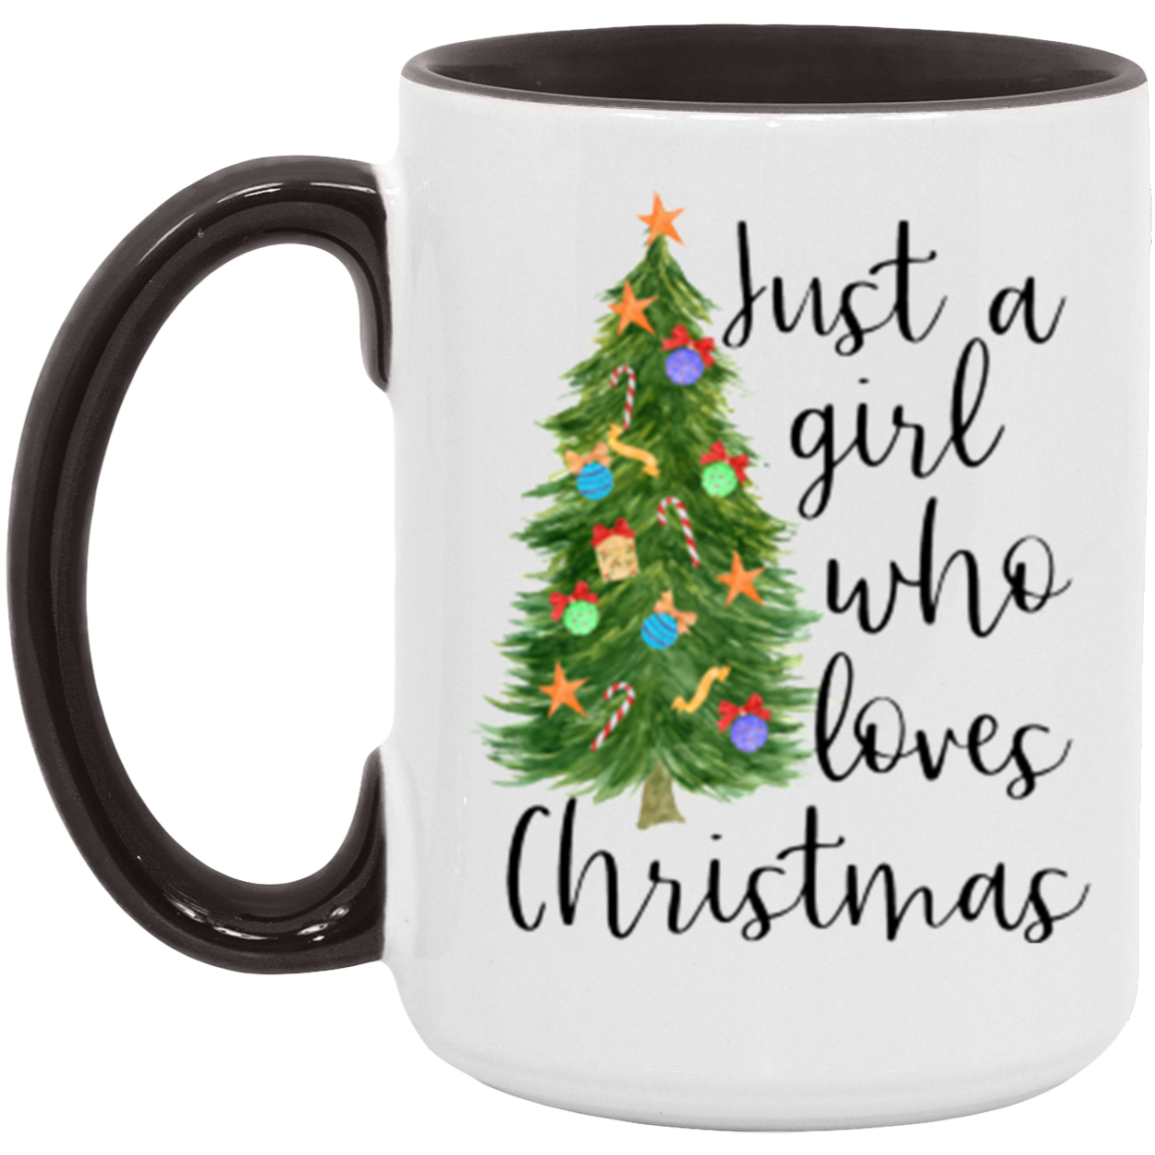 Just a Girl Who Loves Christmas Mug